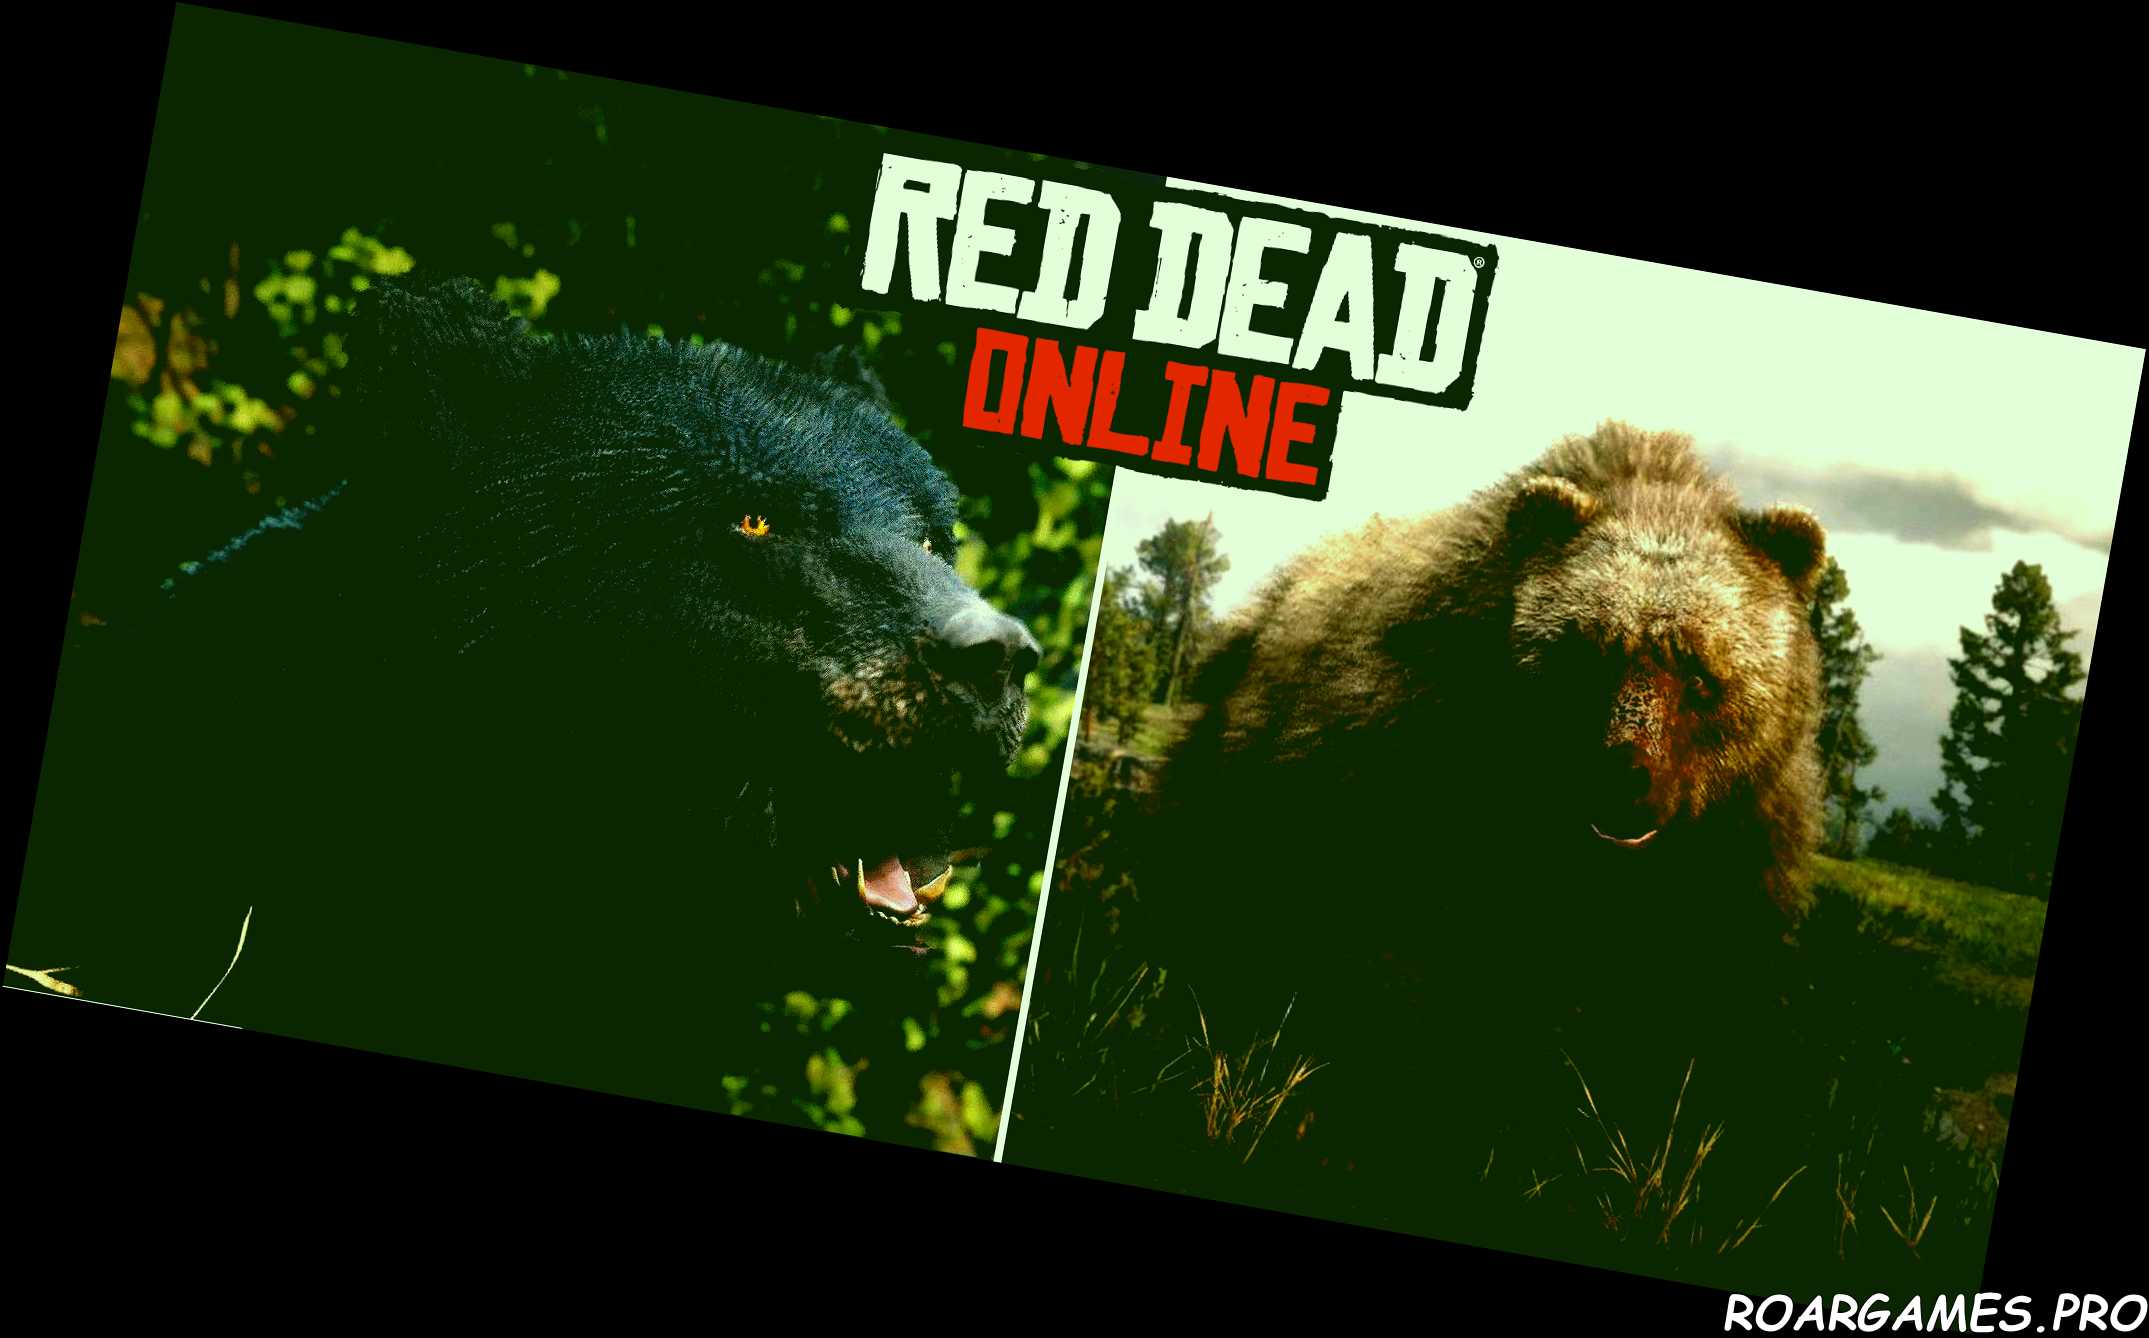 Red Dead Online Grizzly Black Bear location guide SLATZ 7 twitter reddit